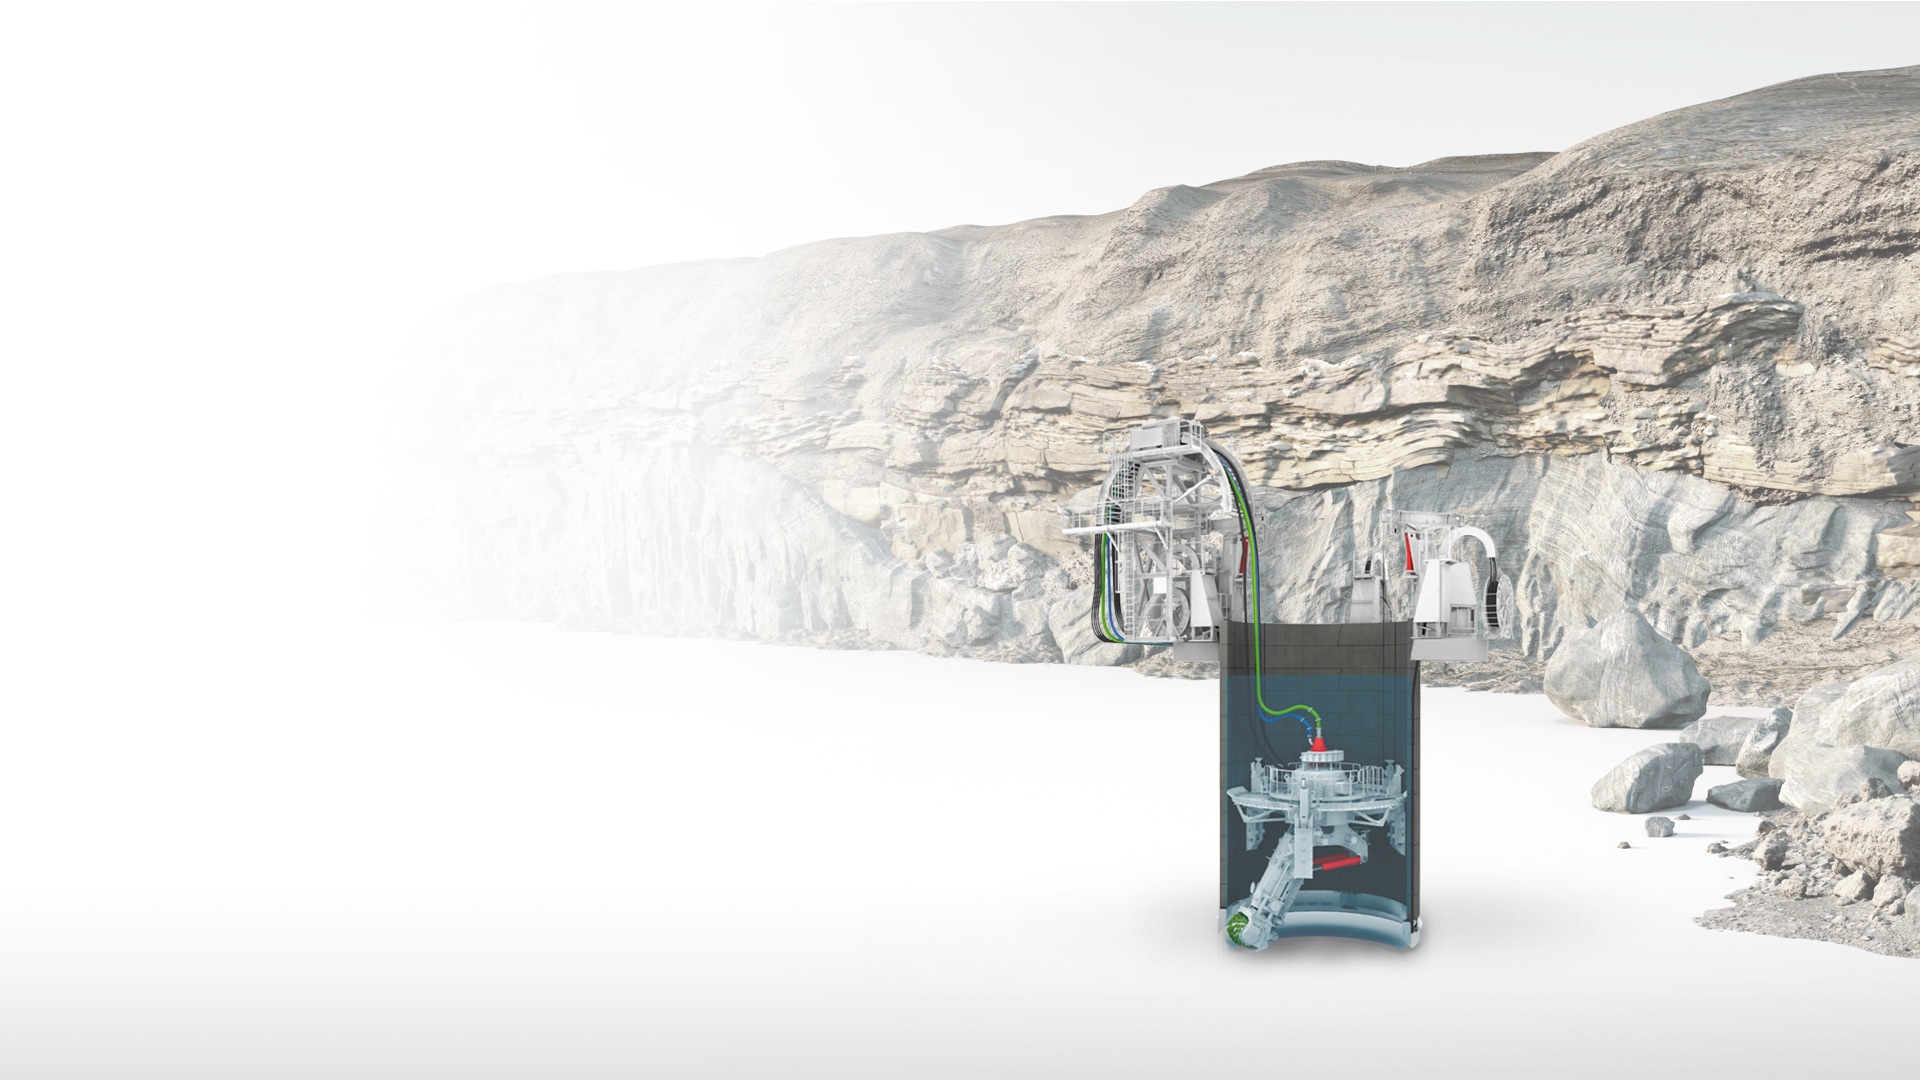 Иллюстрация системы проходки шахты, которая также позволяет заглянуть внутрь с каменной стеной на заднем плане.